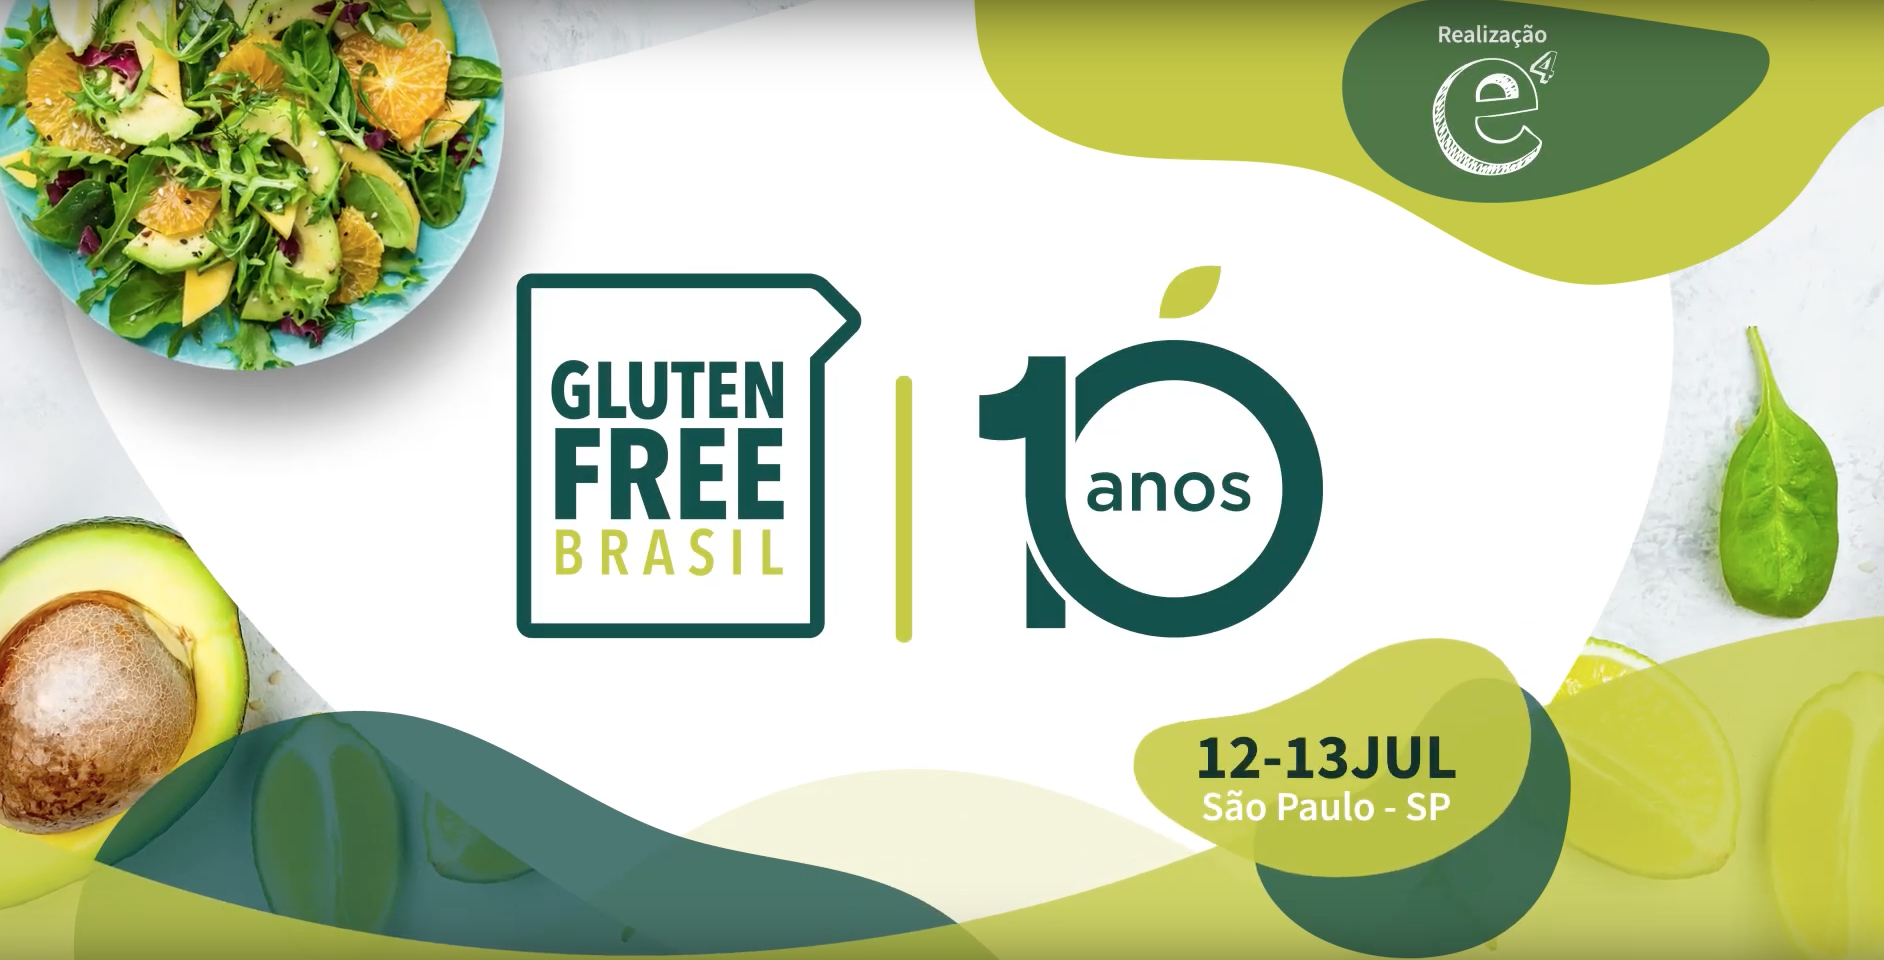 10 anos de Glúten Free é comemorado com palestras para nutricionistas